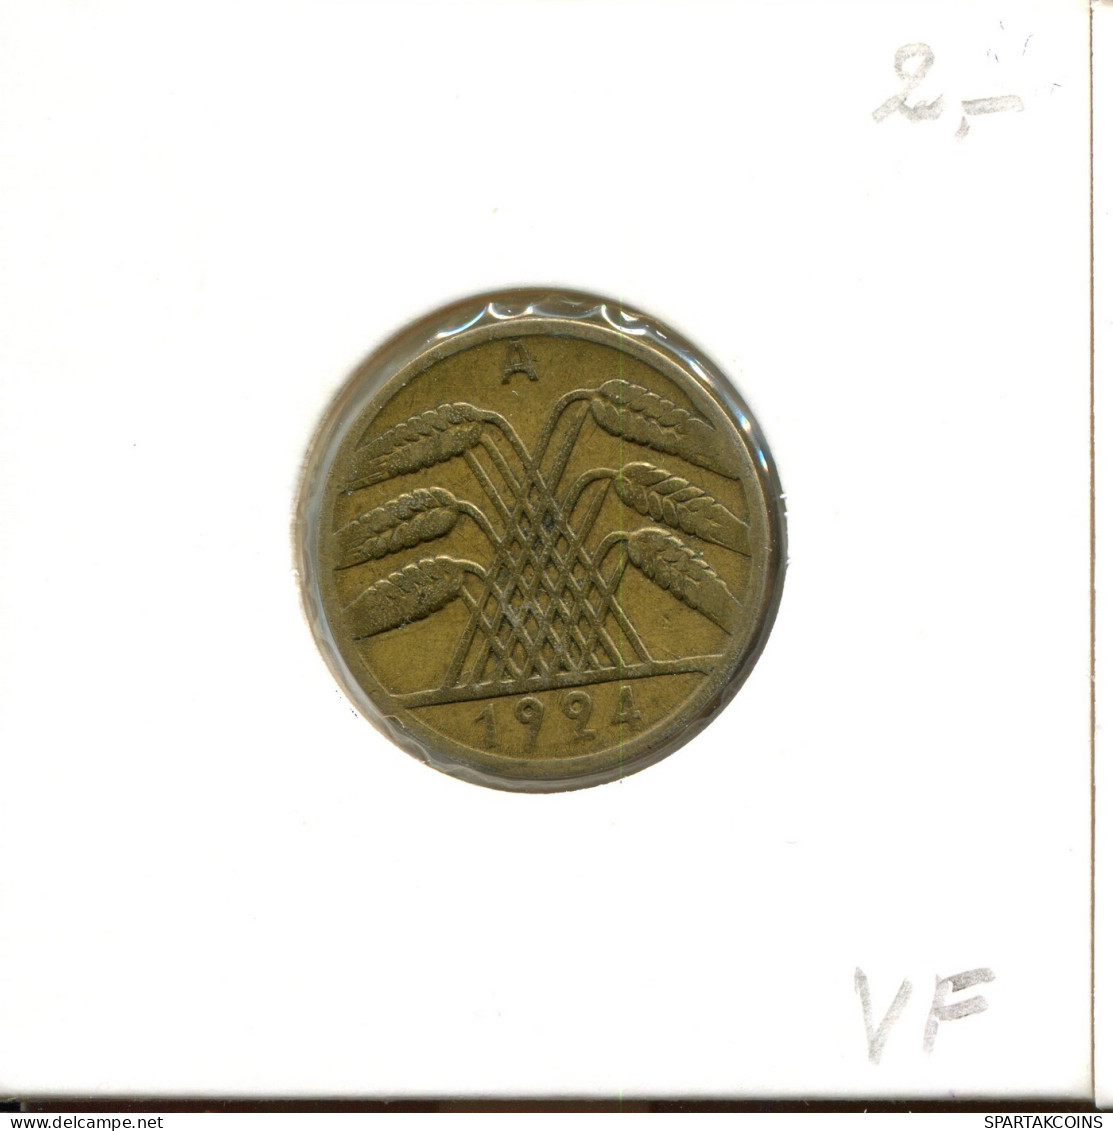 10 RENTENPFENNIG 1924 A GERMANY Coin #DA796.U.A - 10 Renten- & 10 Reichspfennig